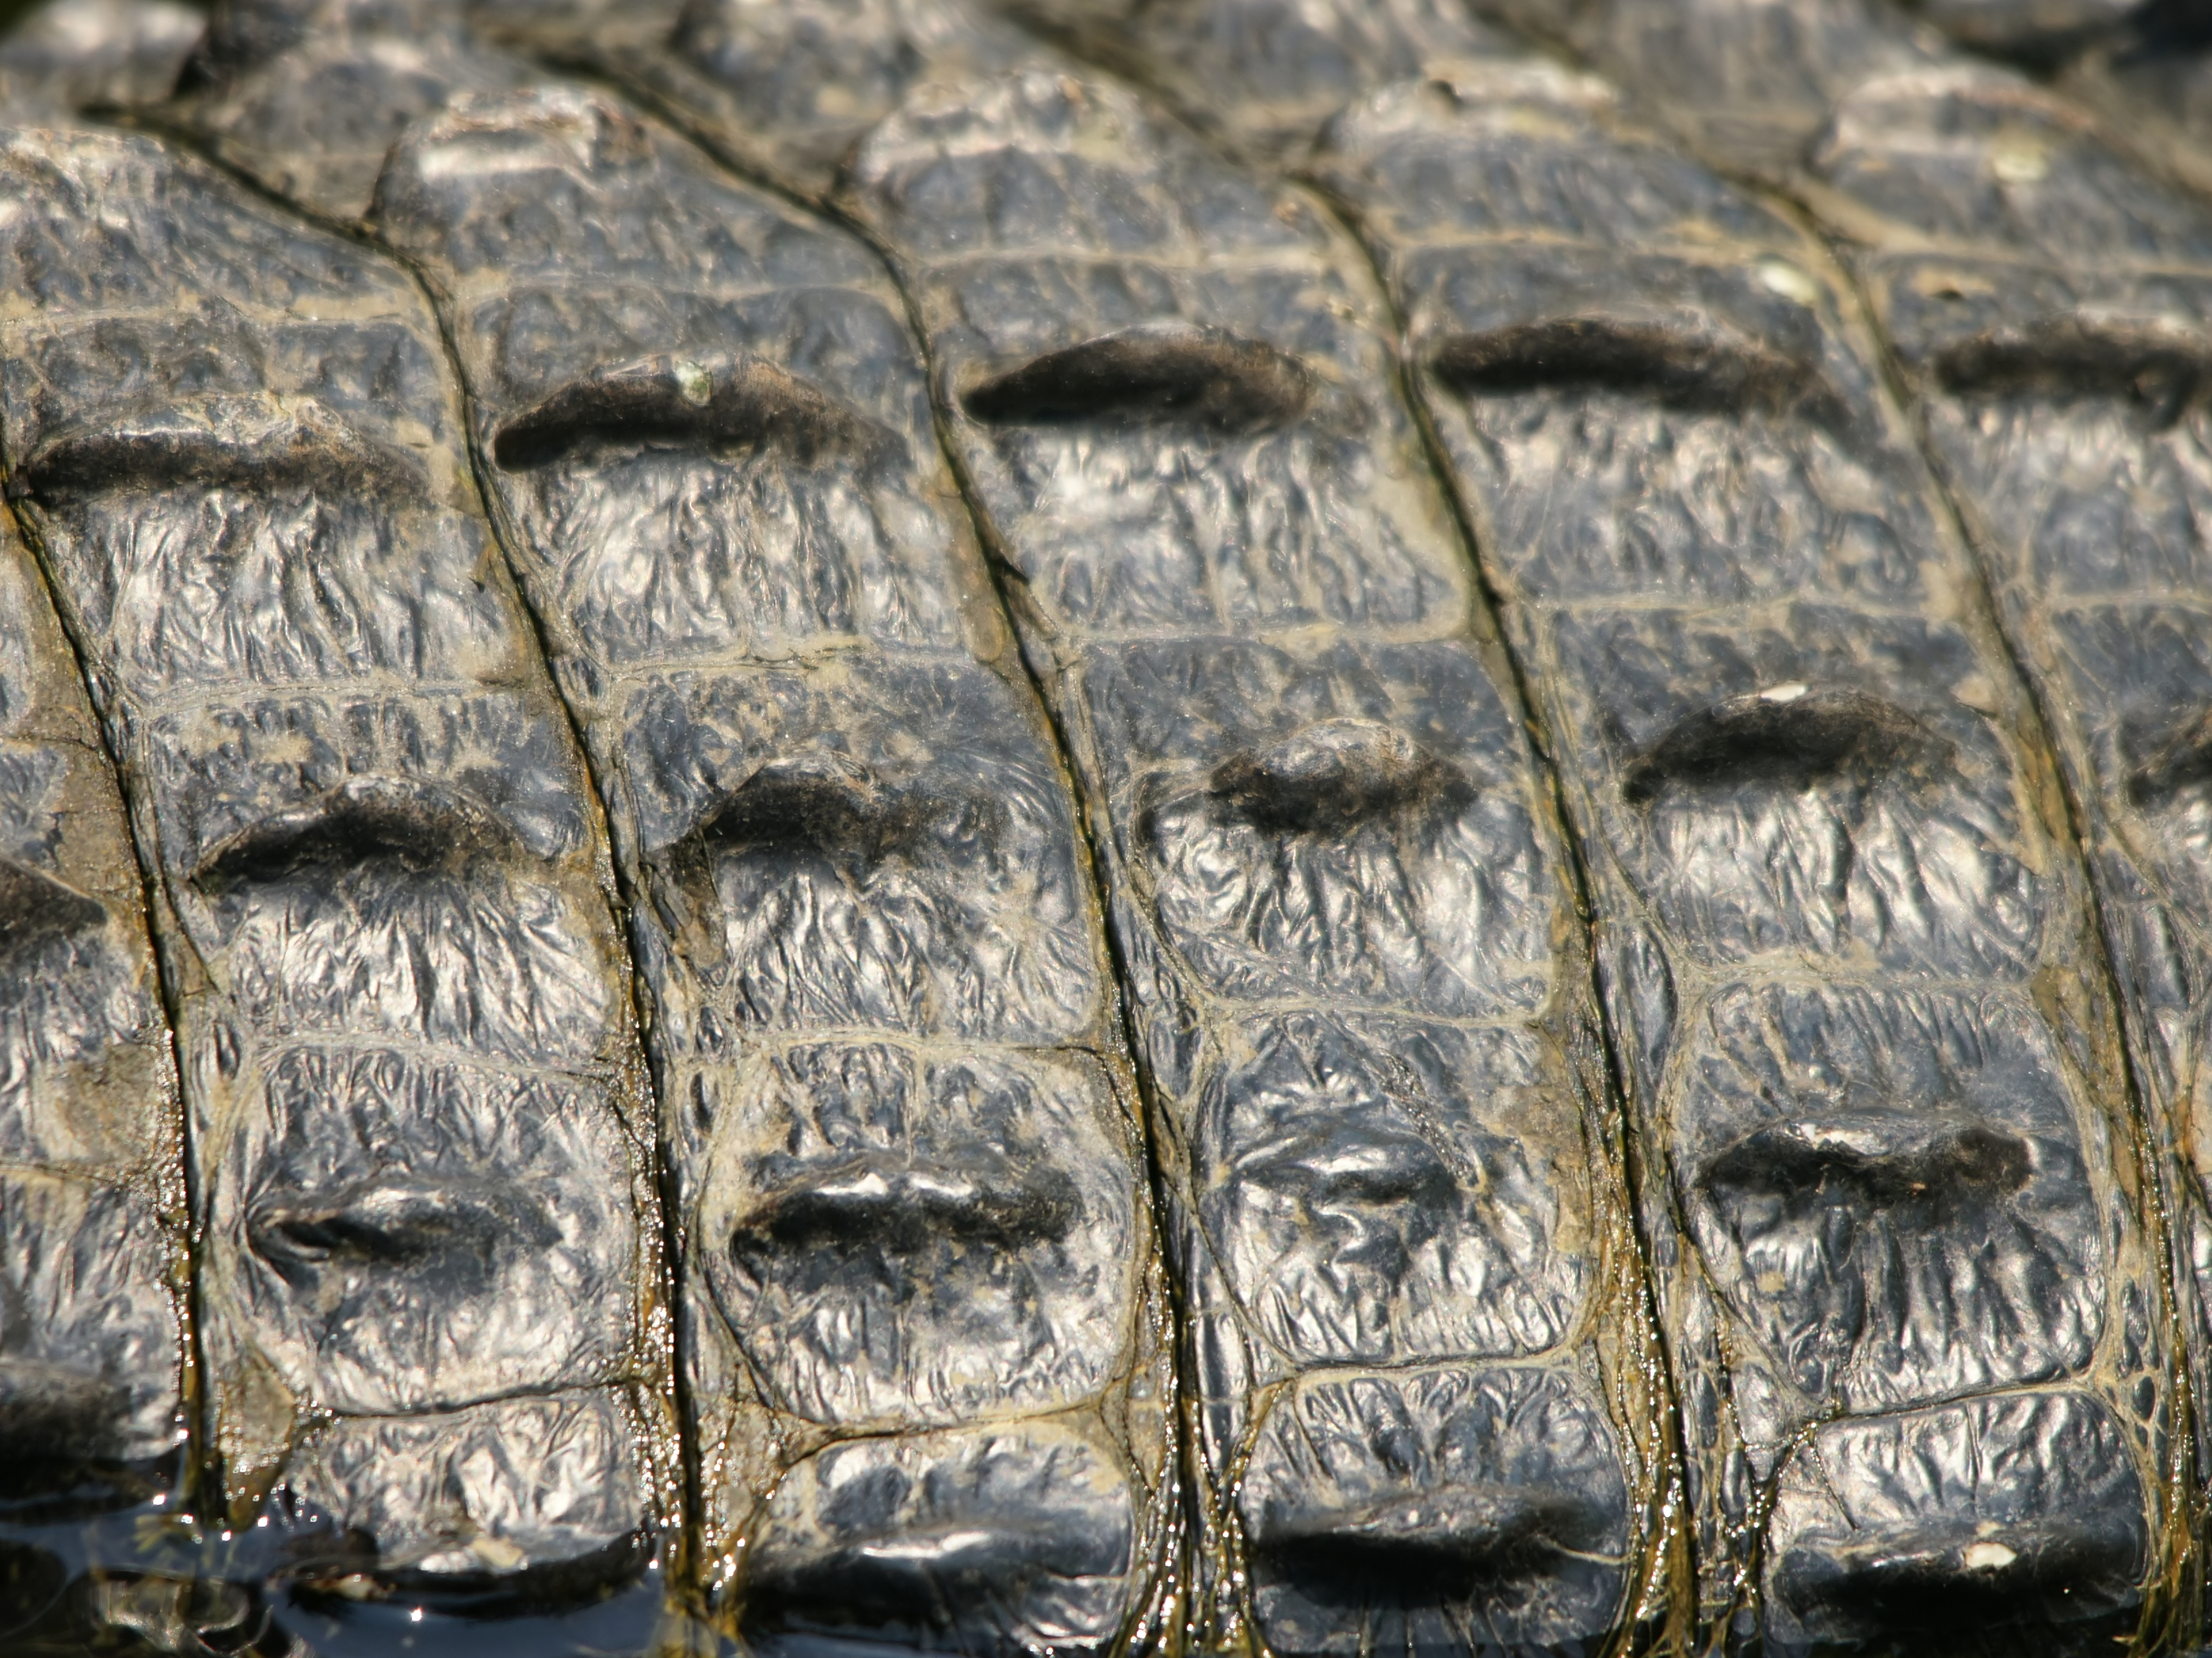 Alligator_mississipiensis_(skin).jpg